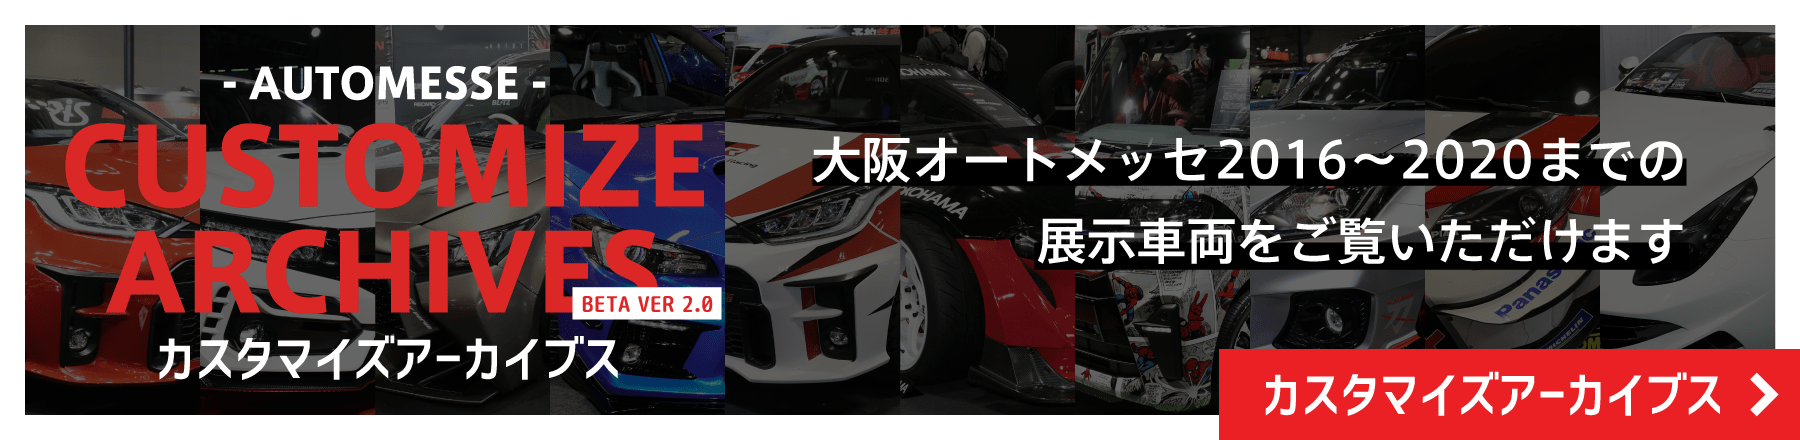 カスタマイズアーカイブス / 大阪オートメッセ2016から2020までの展示車両をご覧いただけます。